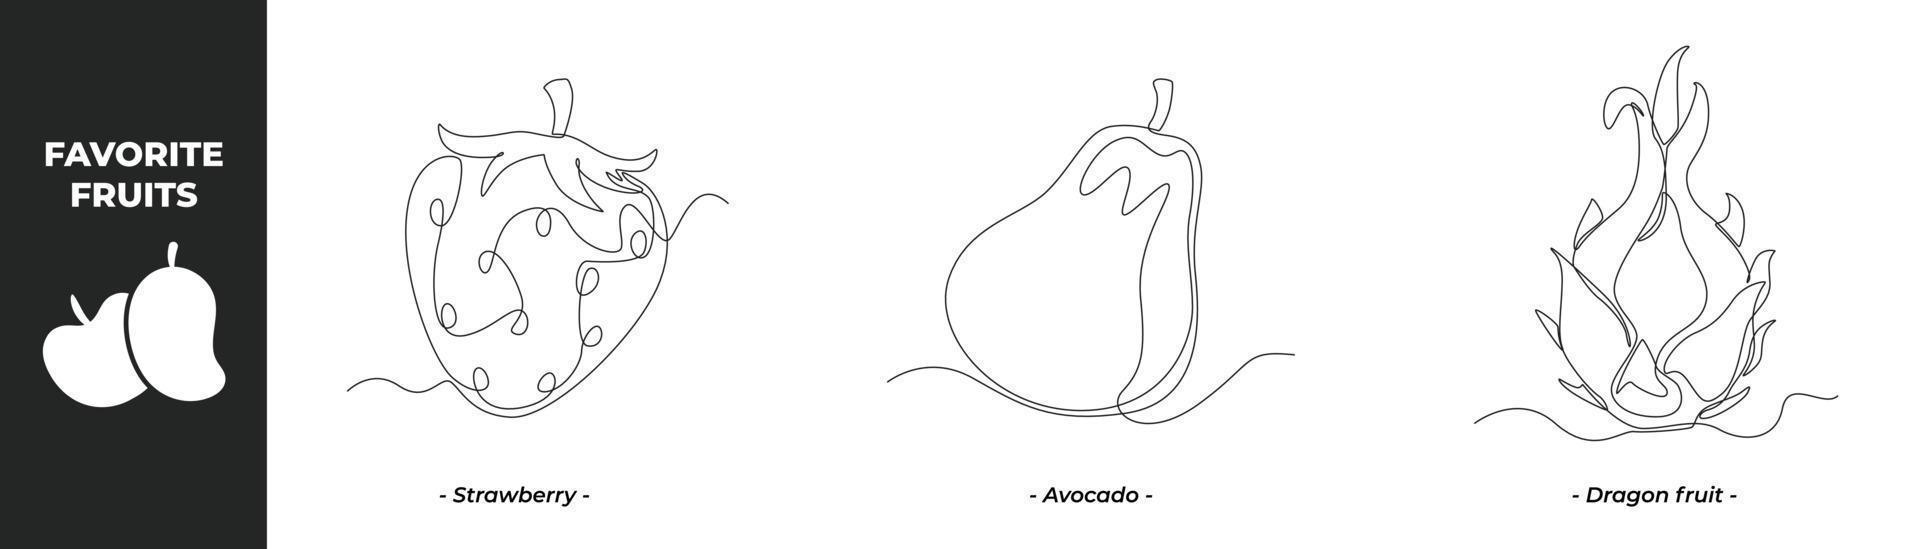 concepto de conjunto de frutas de dibujo de una sola línea. fresa, aguacate y fruta del dragón. ilustración de vector gráfico de diseño de dibujo de línea continua.